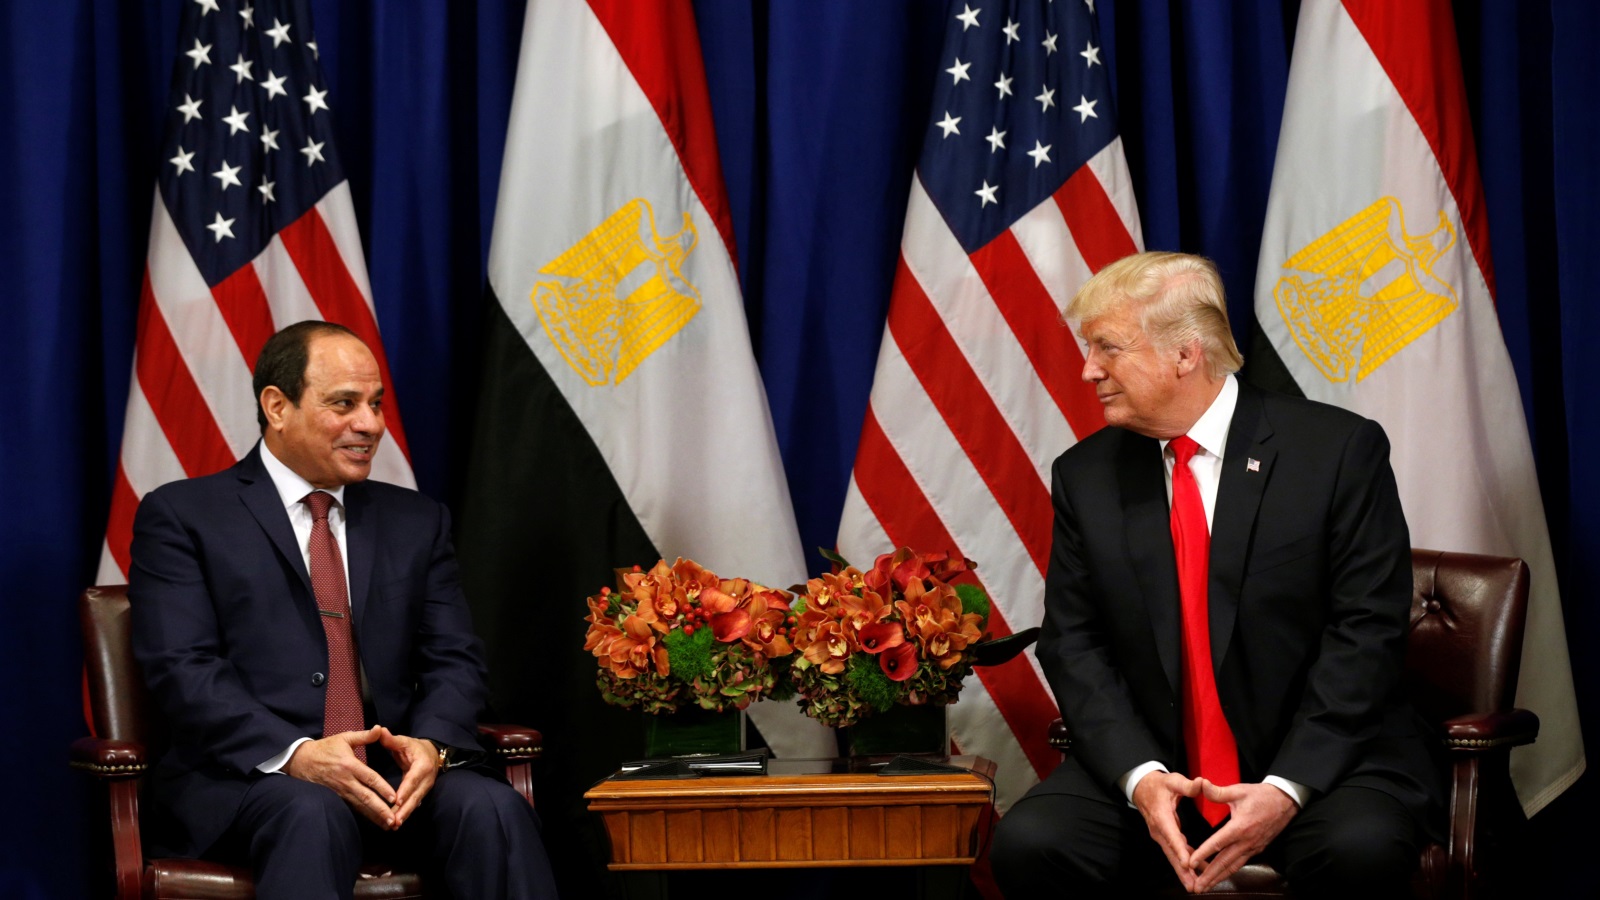 لقاء الرئيس الأميركي دونالد ترمب بالرئيس المصري عبد الفتاح السيسي على هامش اجتماع الجمعية العامة للأمم المتحدة الشهر الماضي (رويترز)